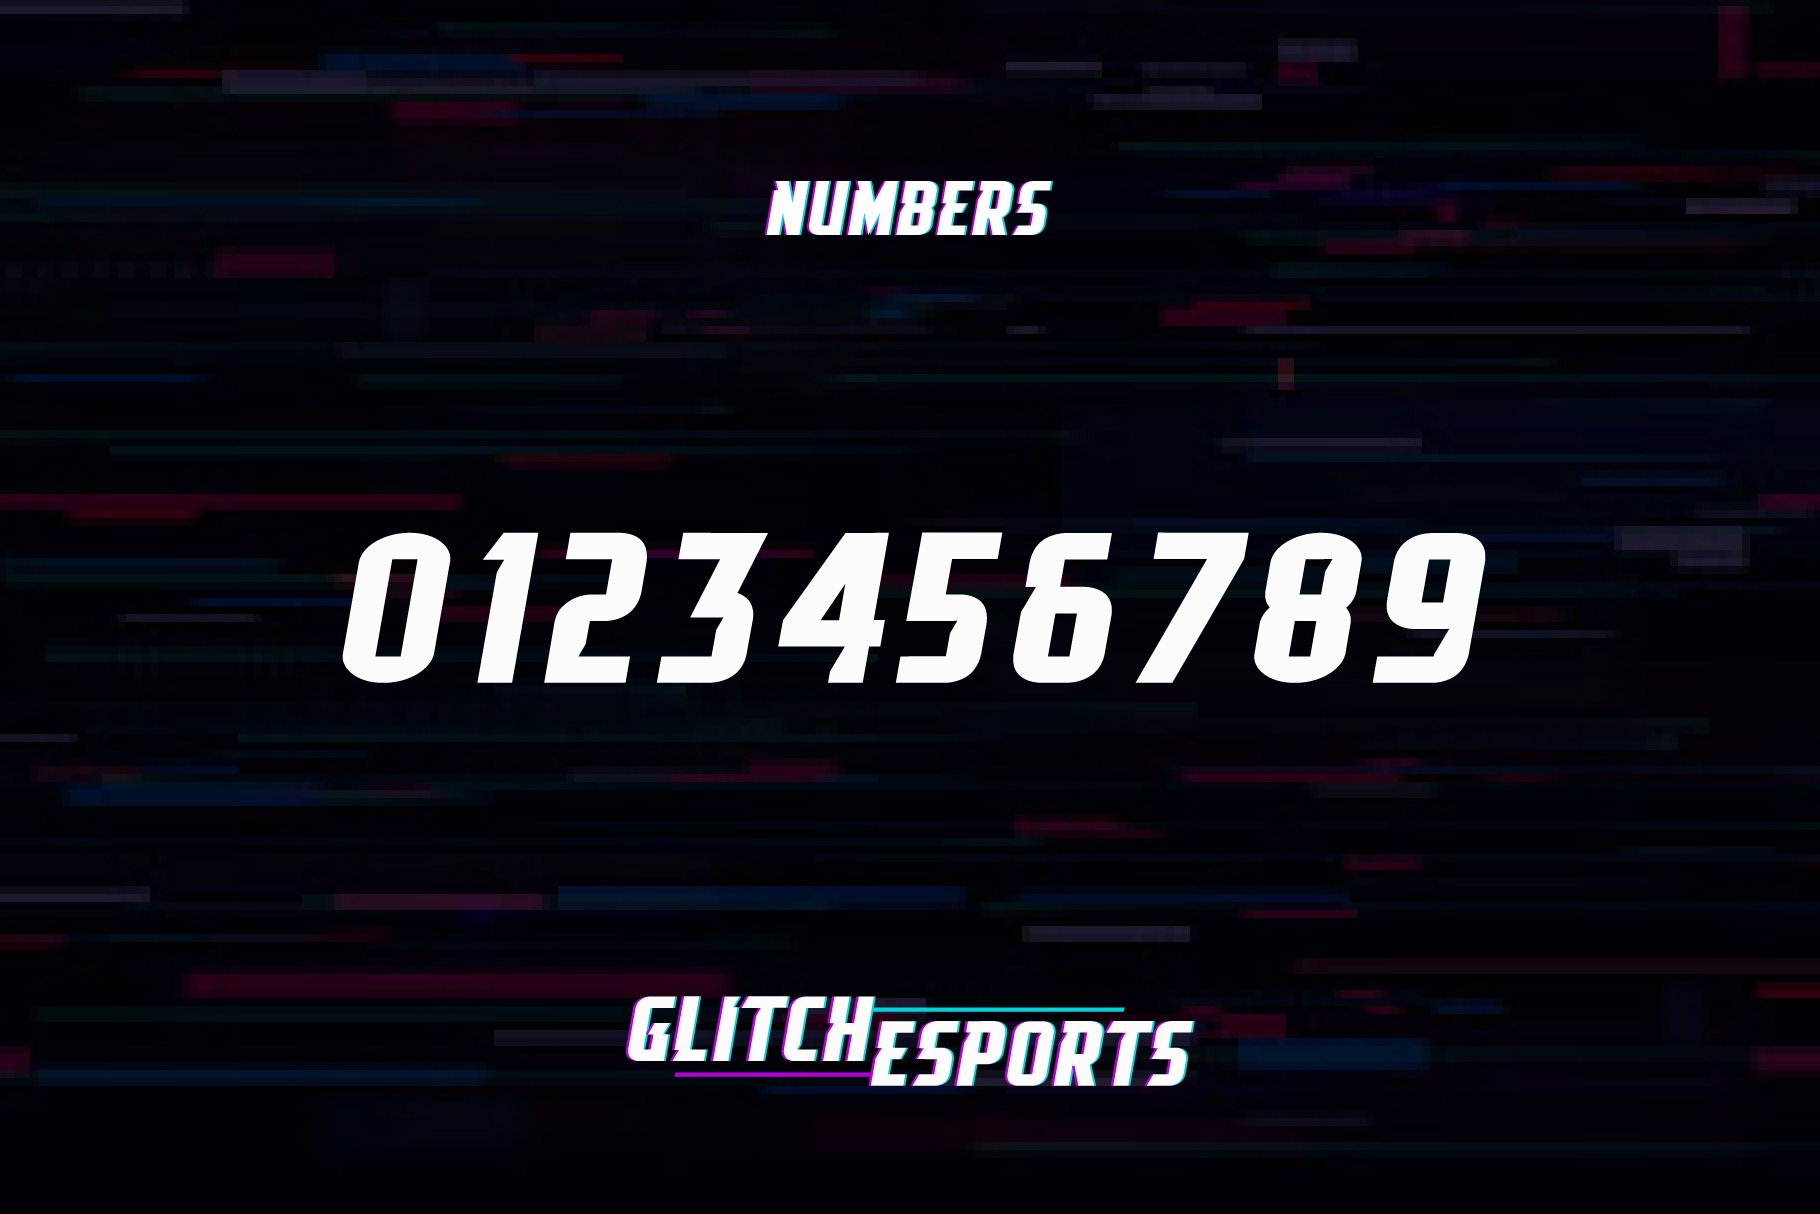 glitch esports displays numbers 965